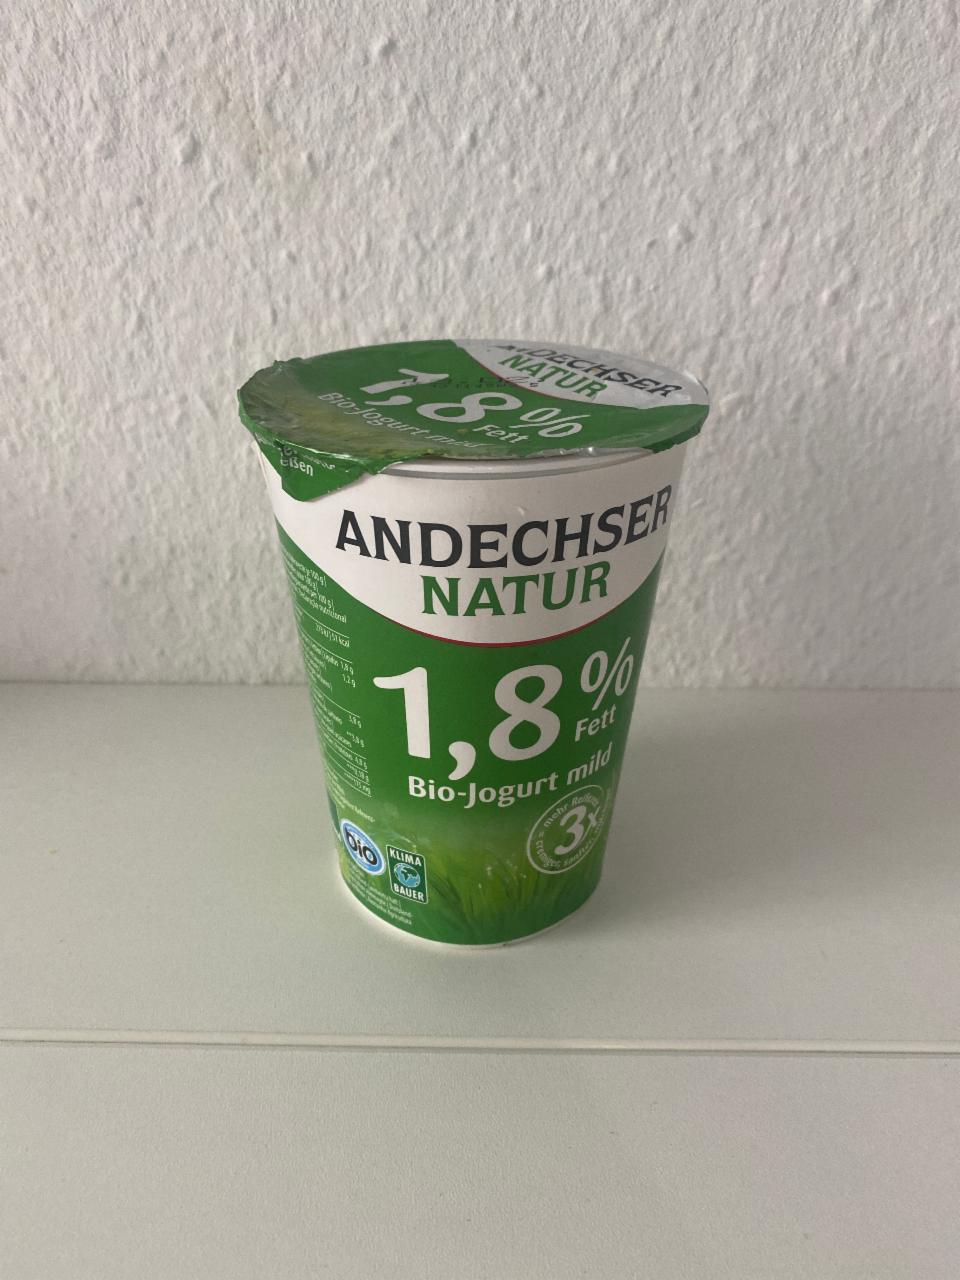 Фото - Bio-Jogurt mild 1.8% Andechser natur